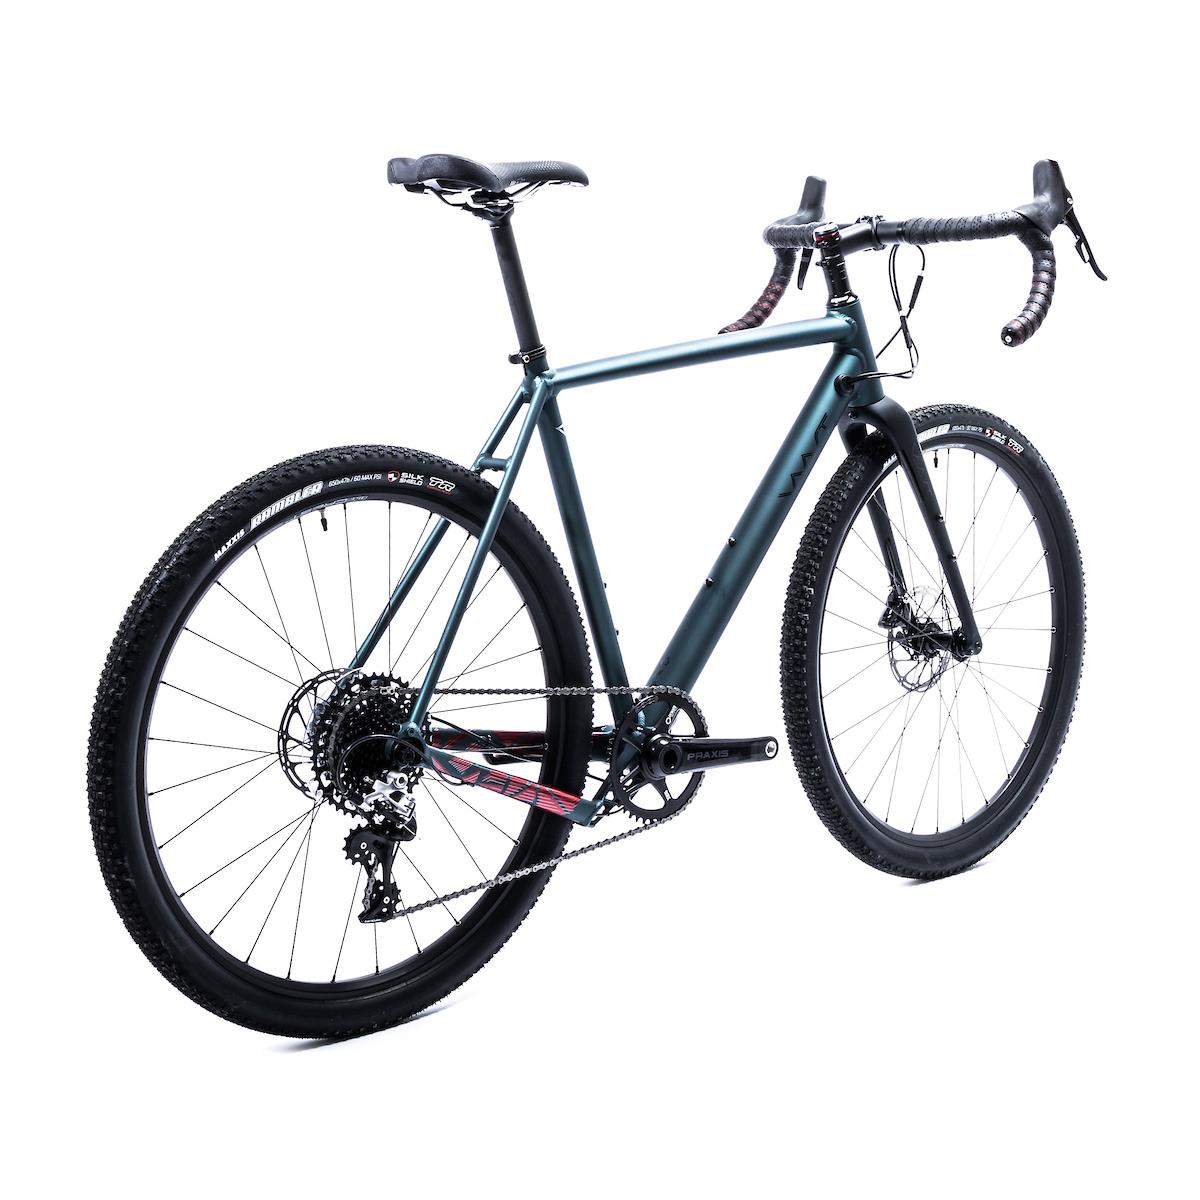 Vaast A/1 650B RIVAL AXS velosipēds, zils, L, 54 cm